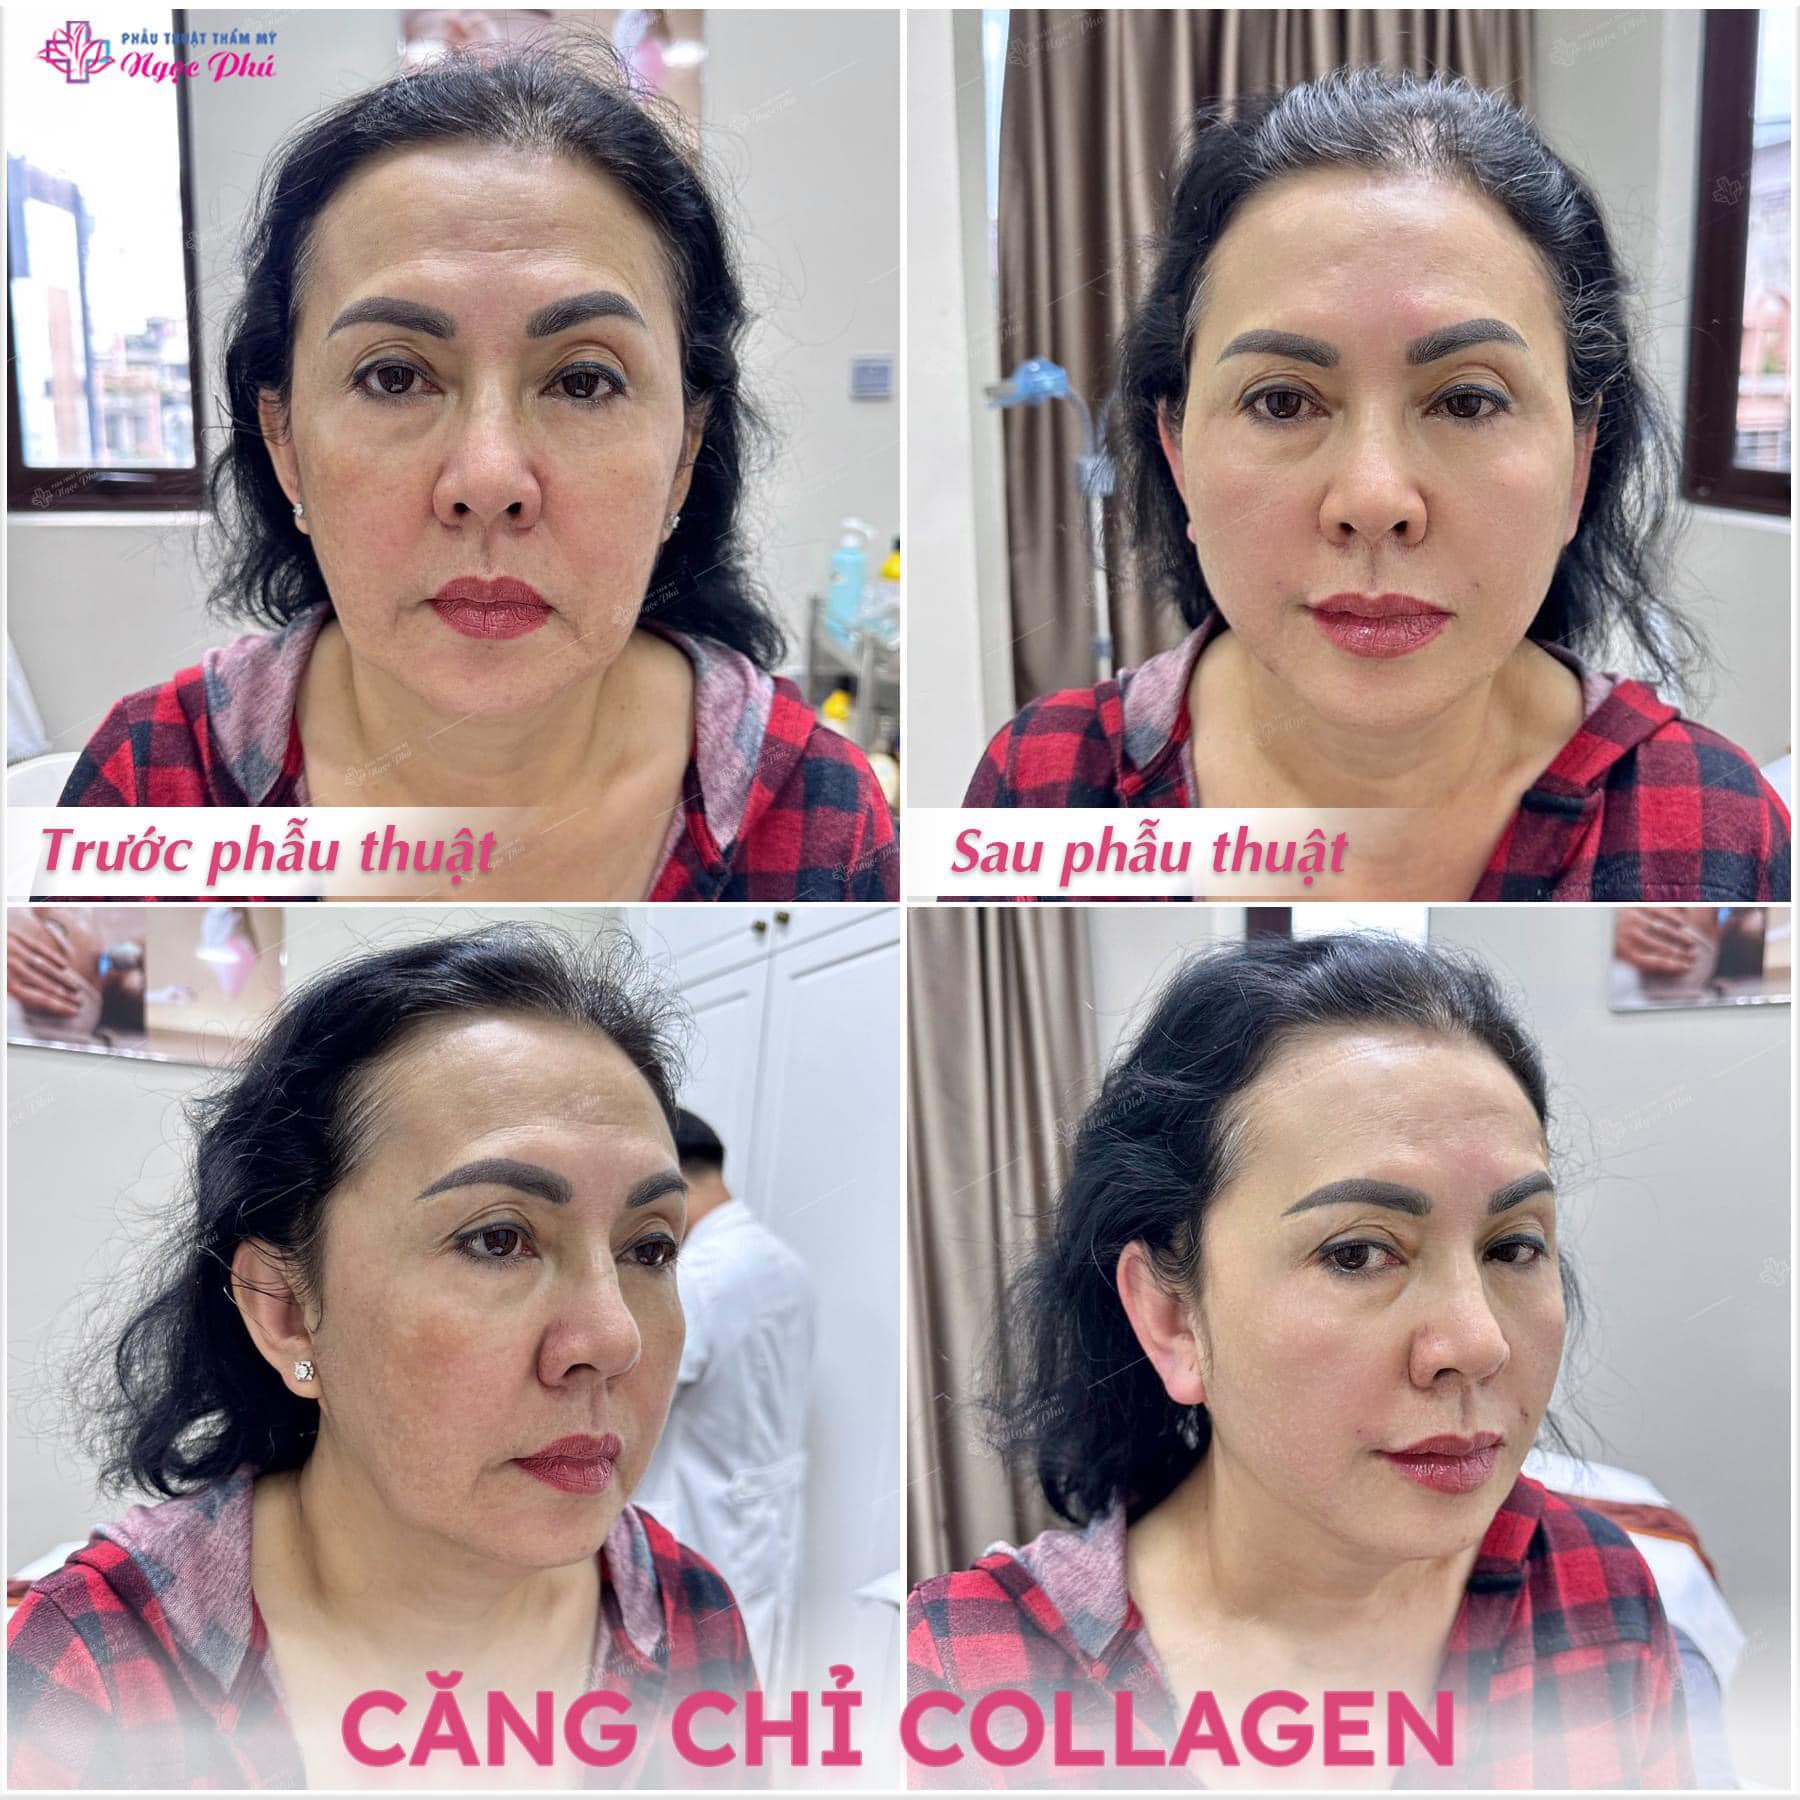 Dịch vụ căng da mặt bằng chỉ collagen là một phương pháp thẩm mỹ tiên tiến, sử dụng các sợi chỉ collagen được kết hợp với tinh thể nano vàng để nâng cơ, căng da và trẻ hóa da.